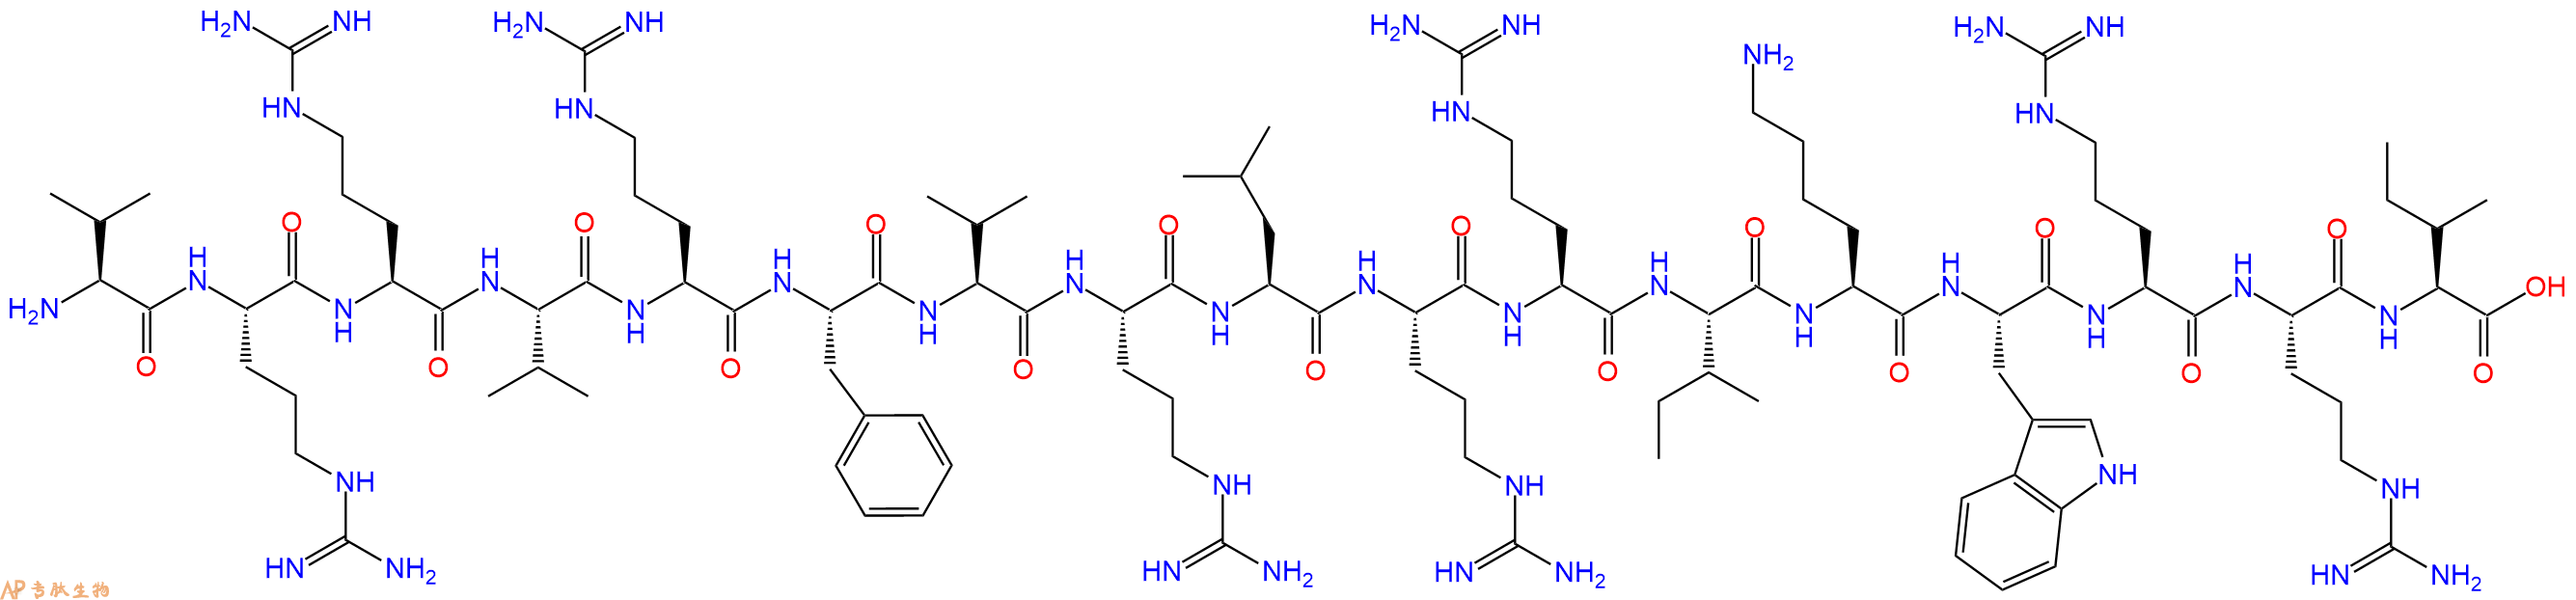 专肽生物产品H2N-Val-Arg-Arg-Val-Arg-Phe-Val-Arg-Leu-Arg-Arg-Il